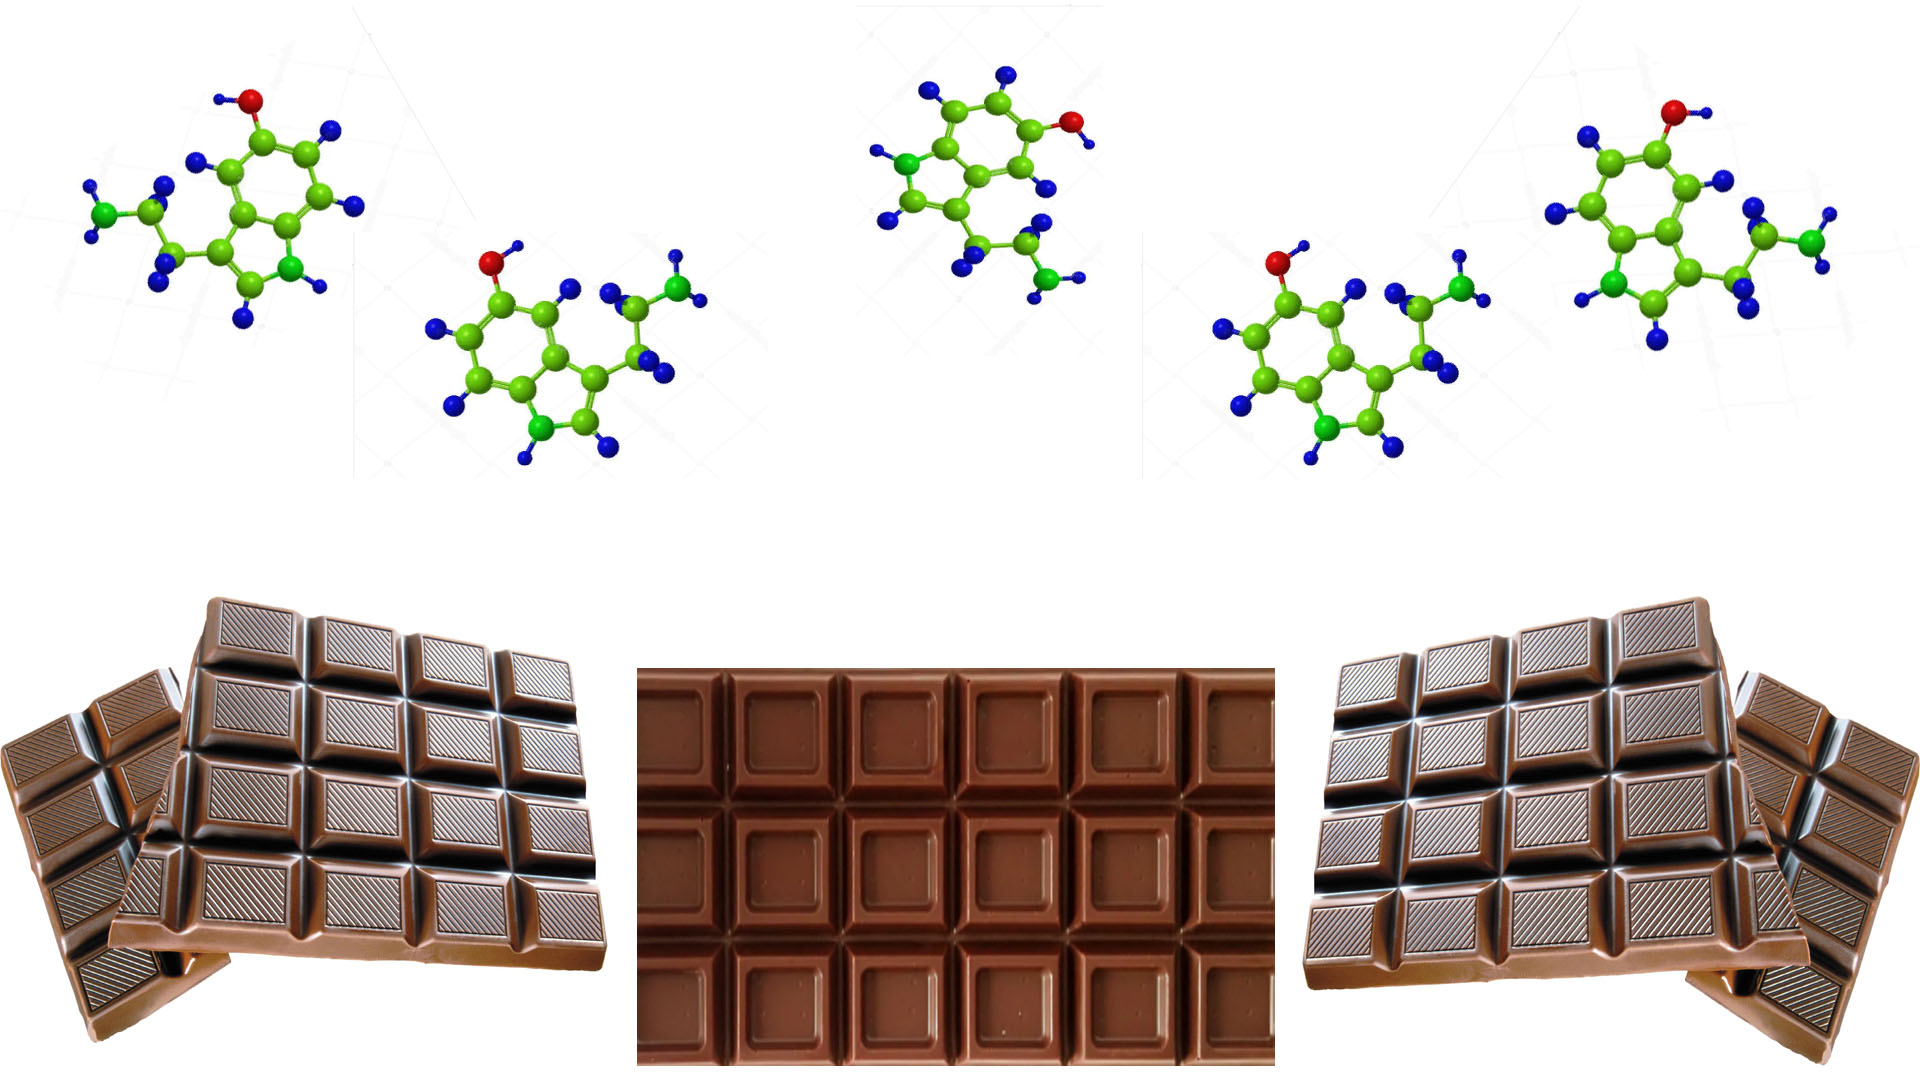 Серотонин гормон счастья, а шоколад помогает его выработке в нашем организме.